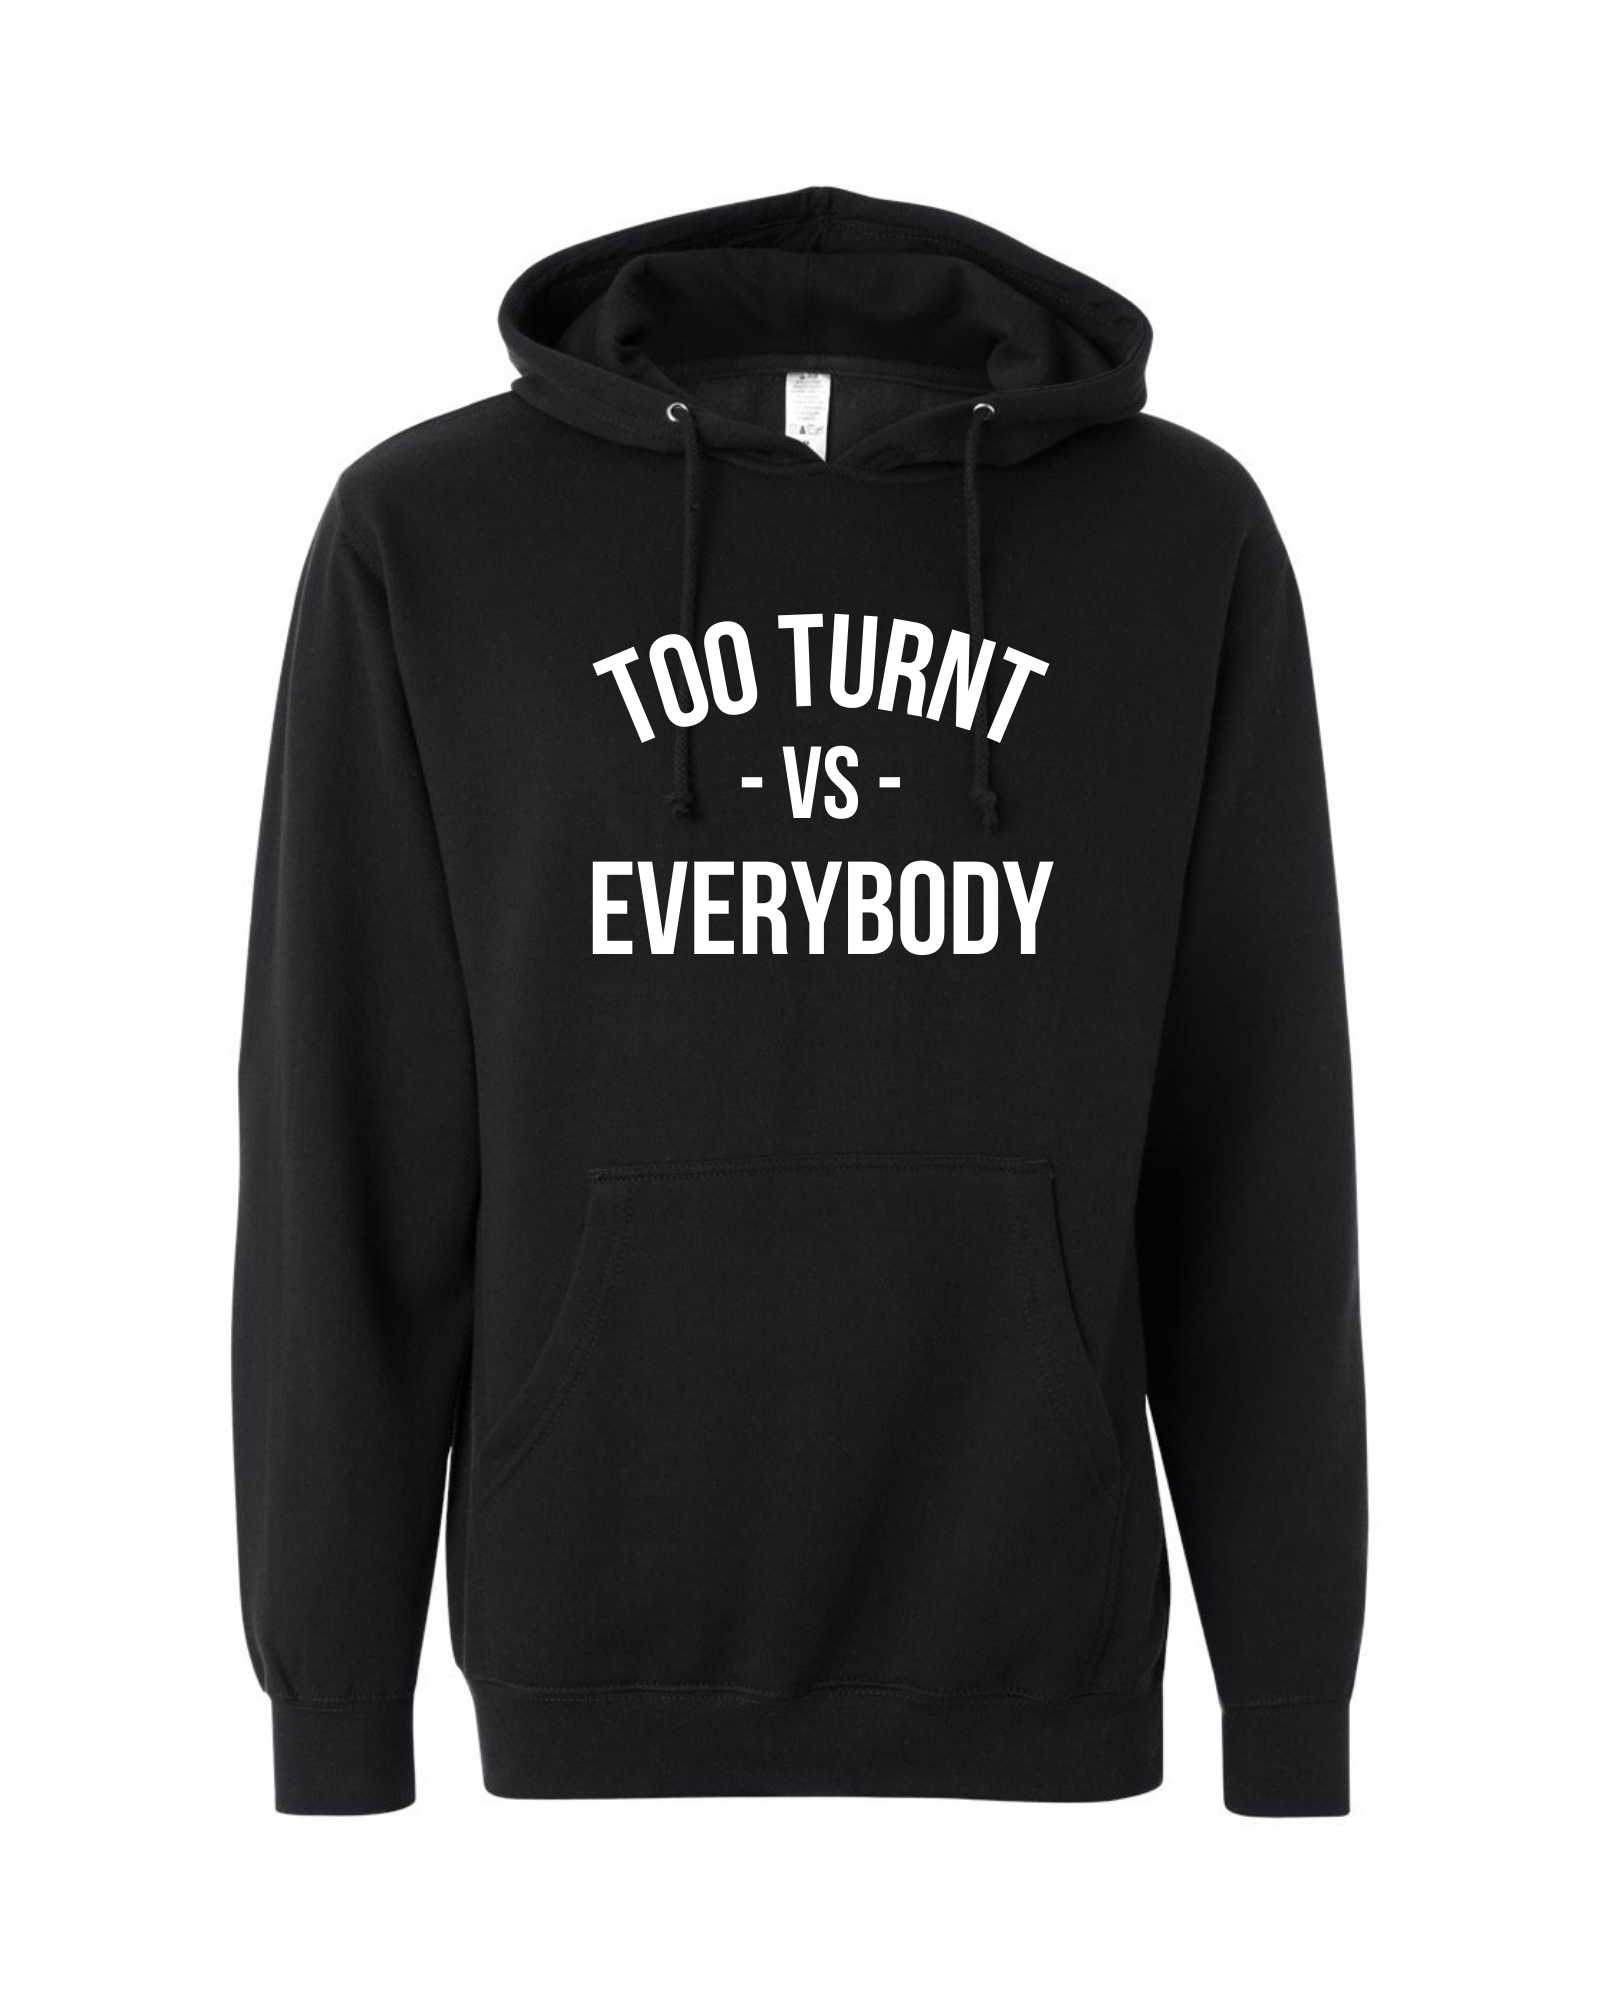 Turnt vs. Everybody Hoodie – TOOTURNTTONY